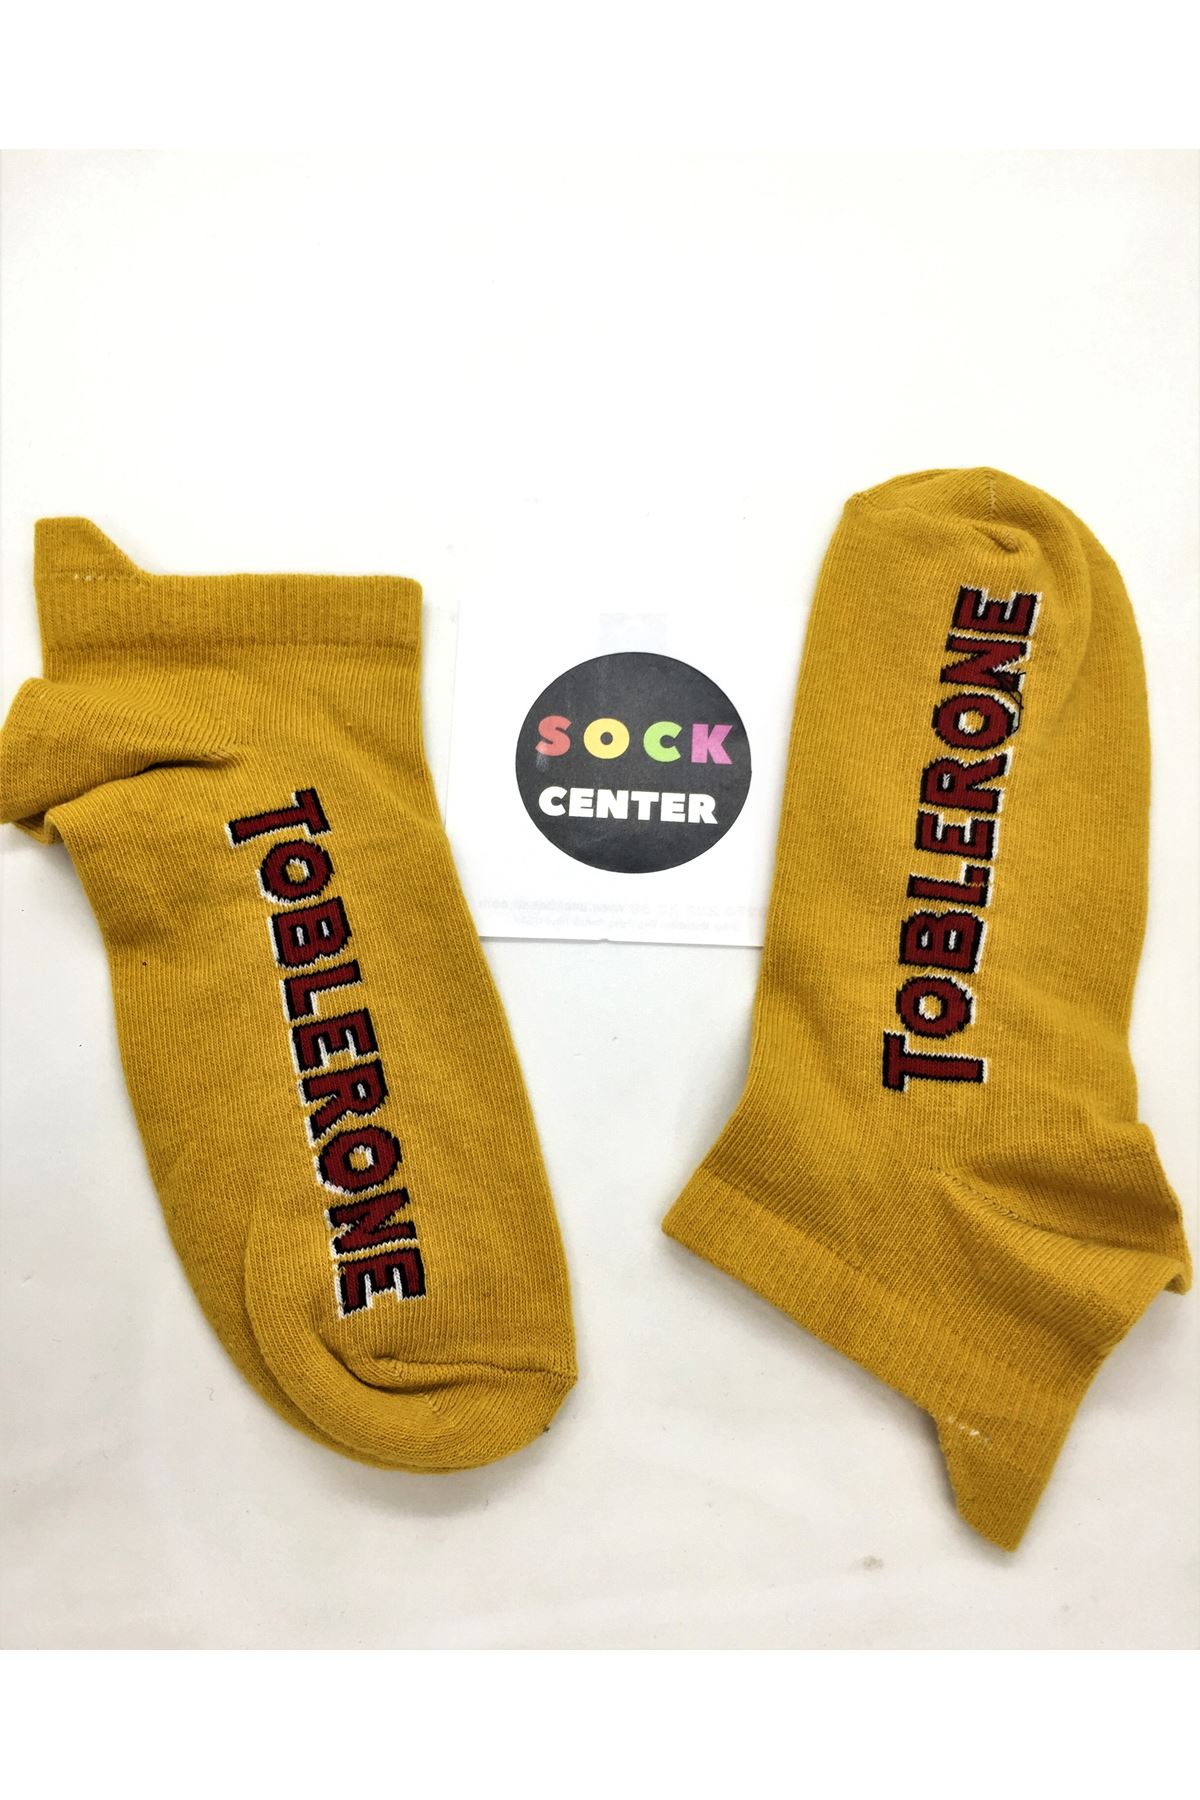 Toblerone - Sarı Patik Çorap